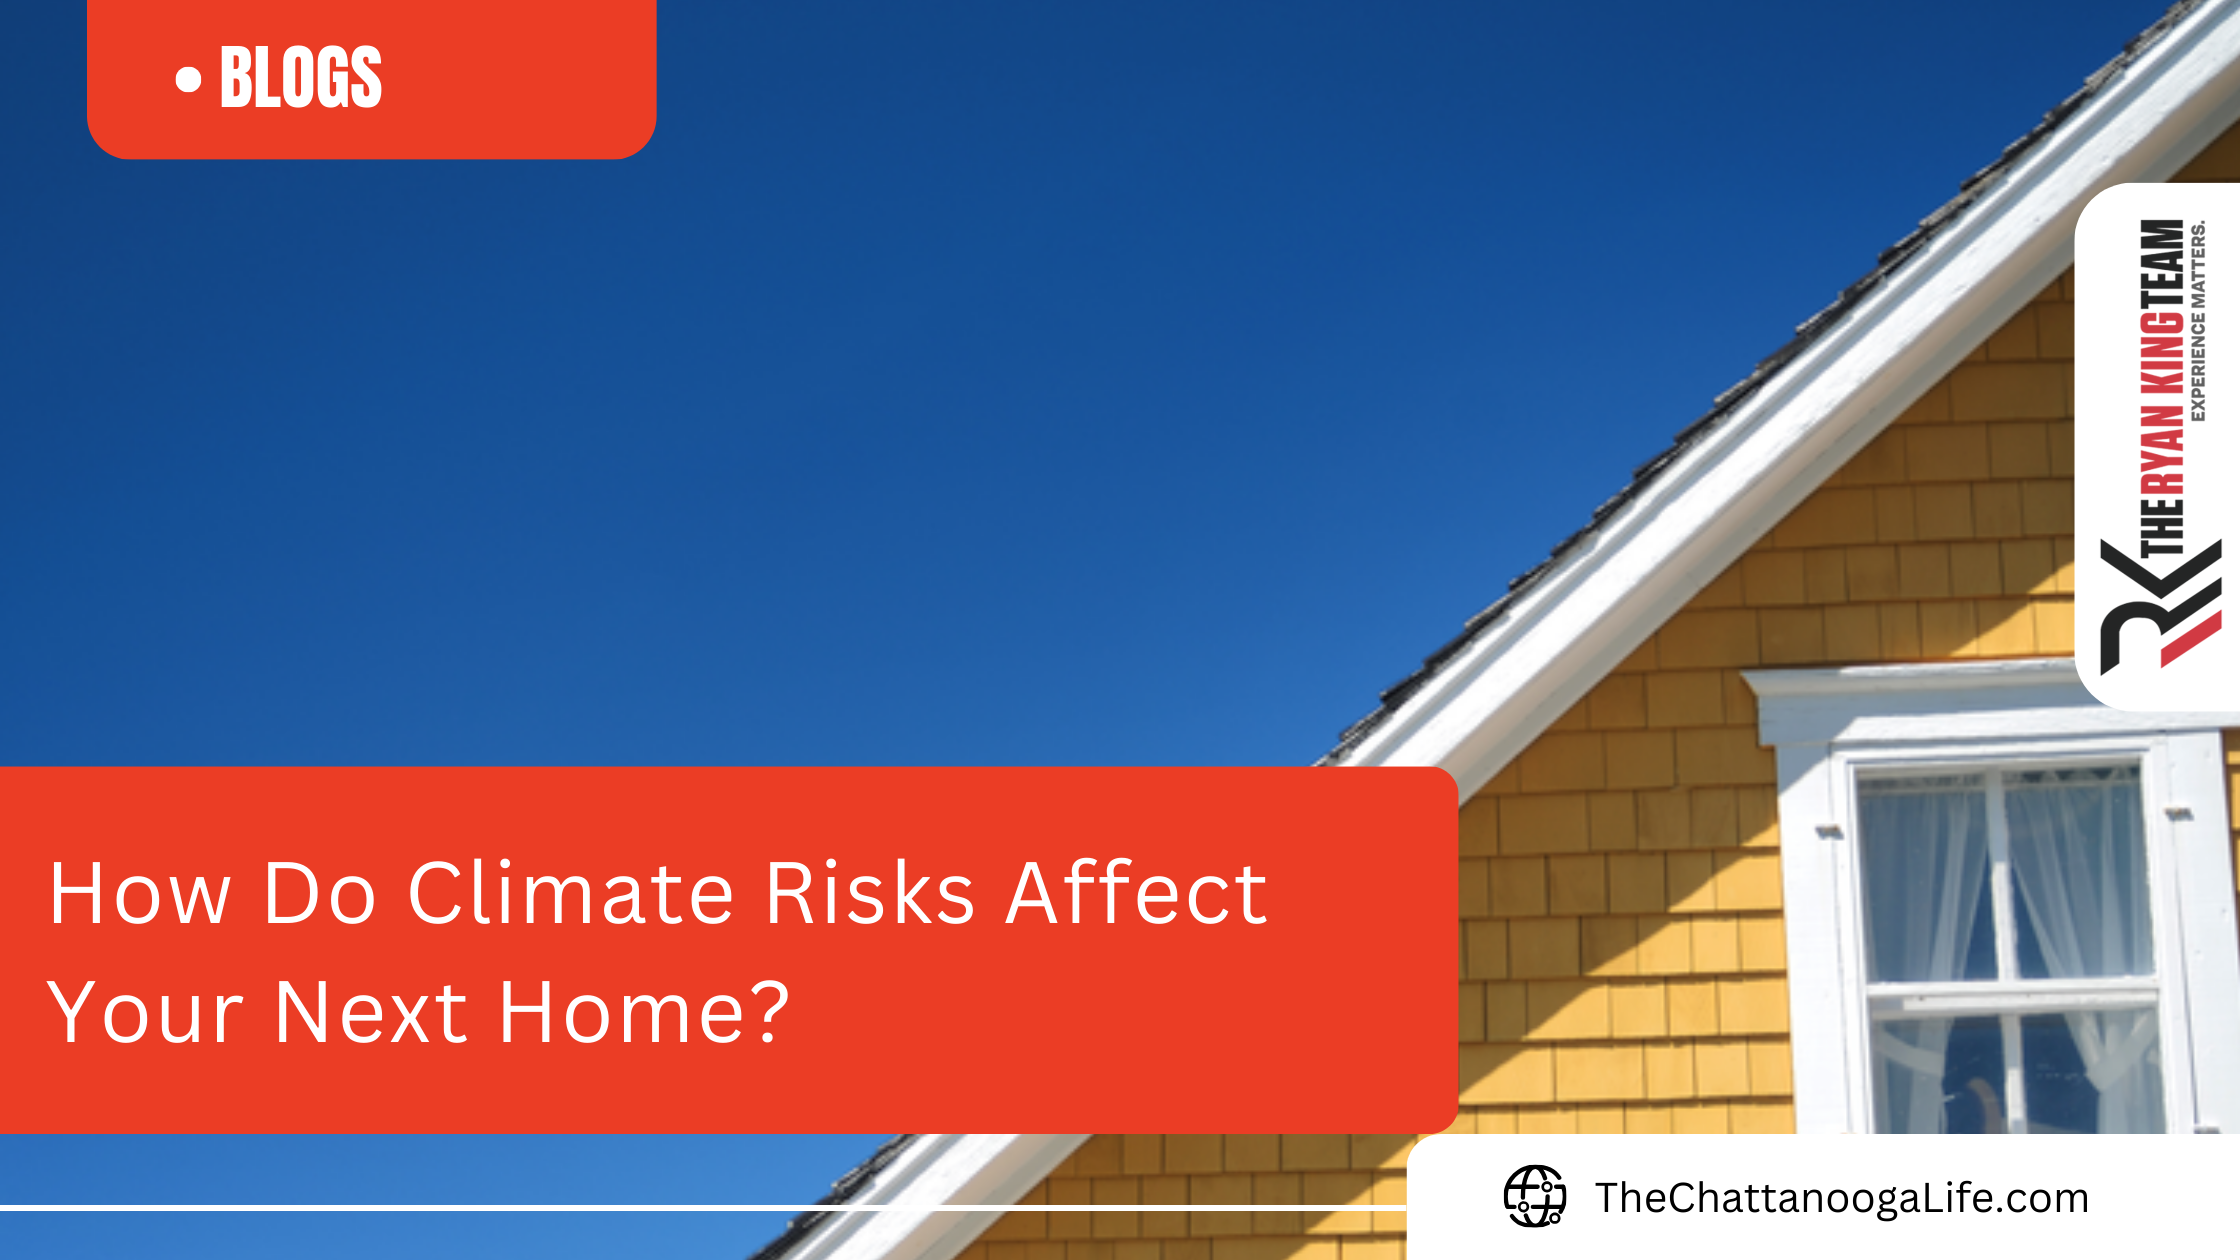 How Do Climate Risks Affect Your Next Home?